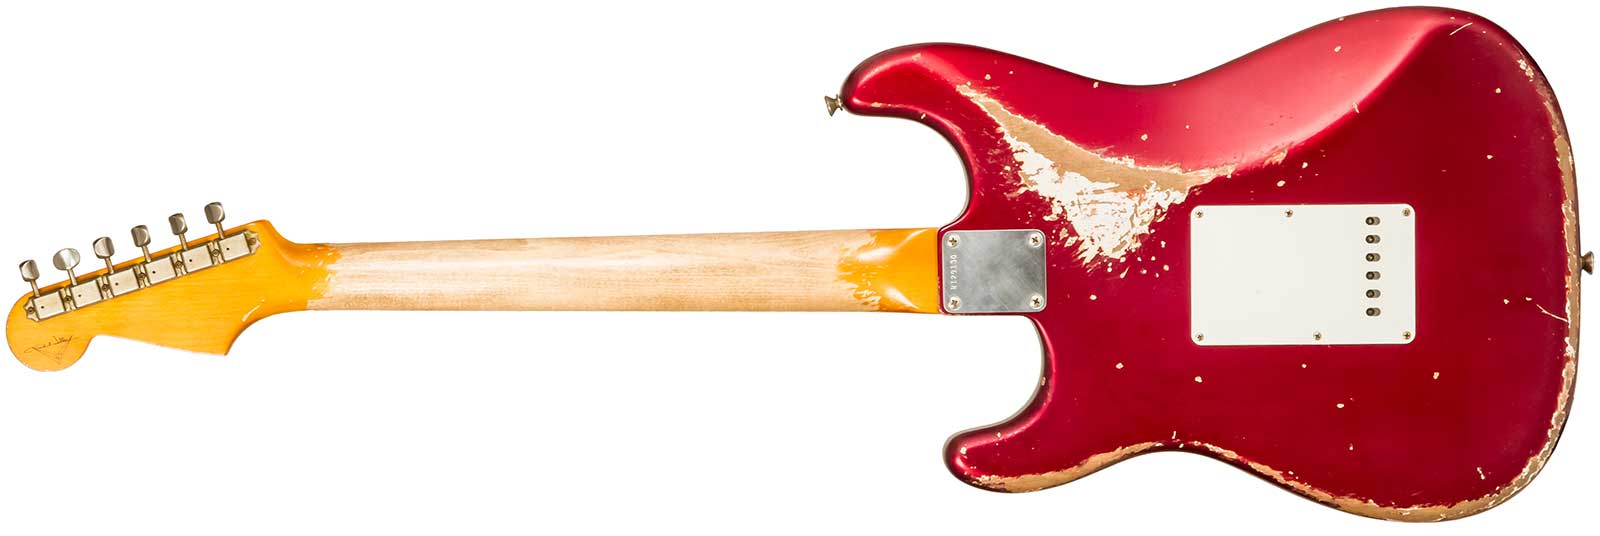 Fender Custom Shop Strat 1964 Masterbuilt P.waller 3s Trem Rw #r129130 - Heavy Relic Candy Apple Red - Guitarra eléctrica con forma de str. - Variatio